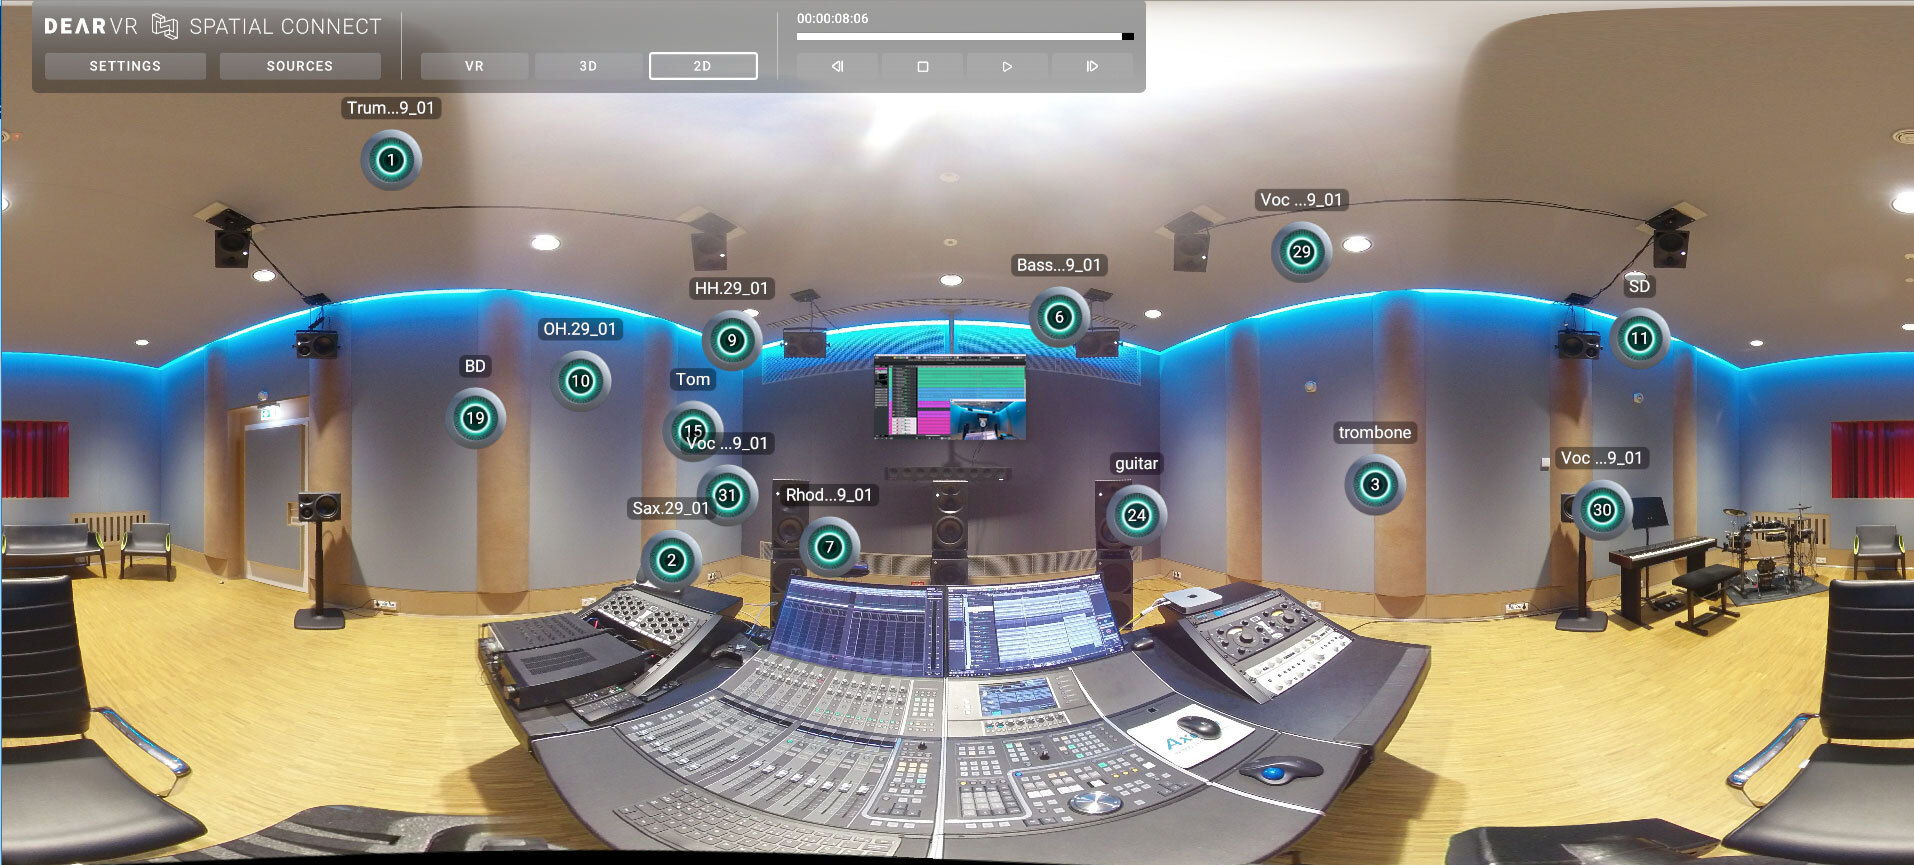 dearVR SPATIAL CONNECT fournit une vue d'ensemble d'une session audio spatiale en simulant les placements audios dans un environnement VR